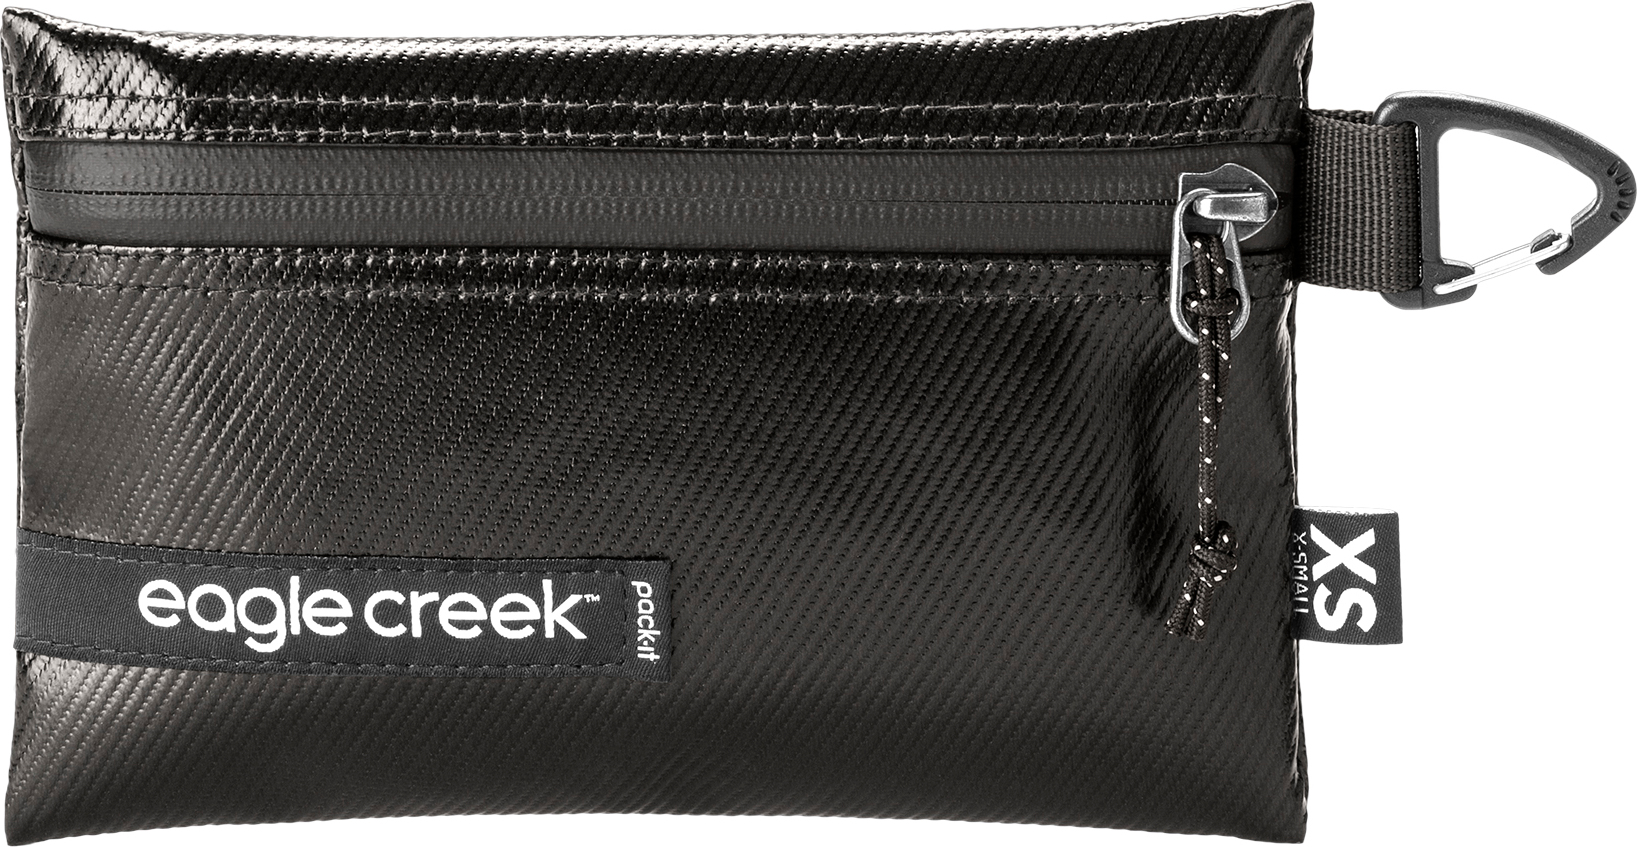 Eagle Creek Eagle Creek Pack-It Gear Pouch XS Black OneSize, Black